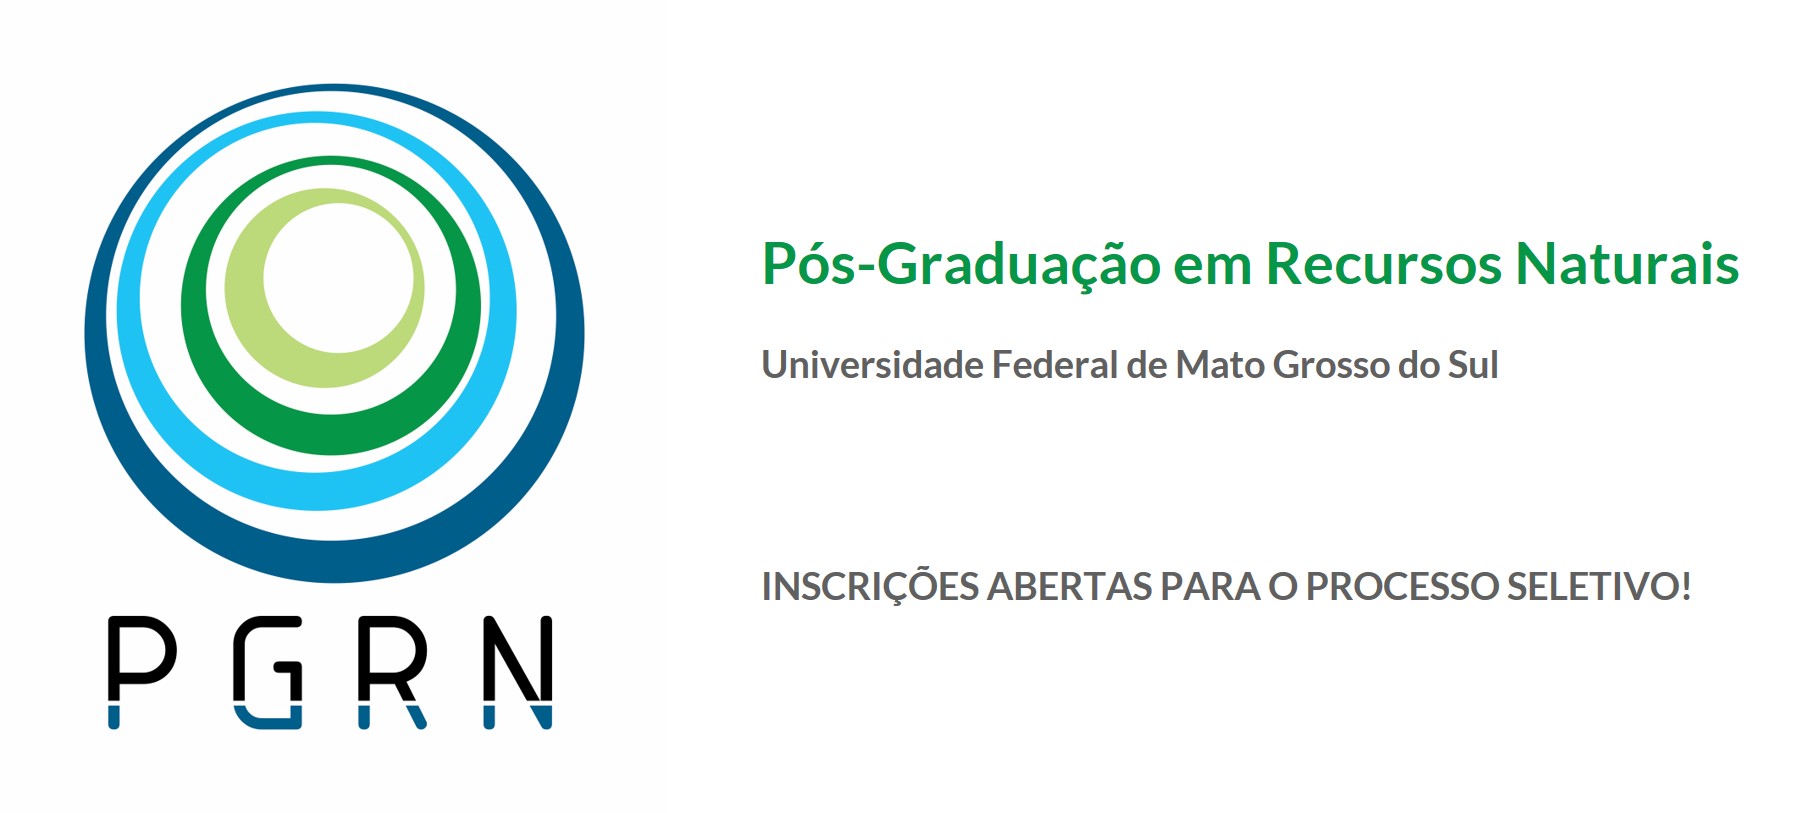 PGRN - Programa de Pós-Graduação em Recursos Naturais da UFMS